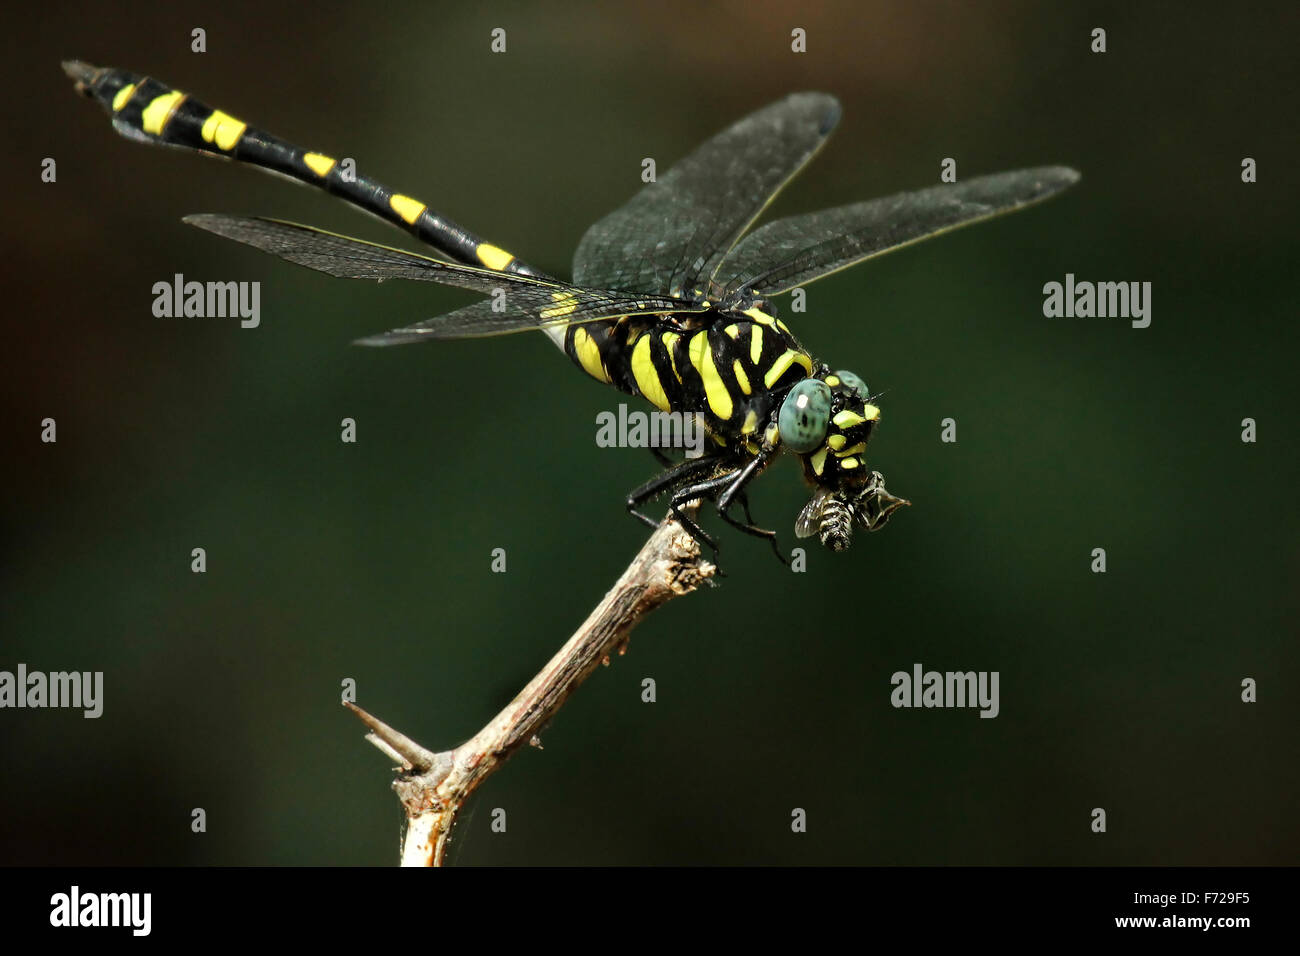 El golden dragonfly (Cordulegaster boltonii anillado) es una de las mayores libélulas. Foto de stock